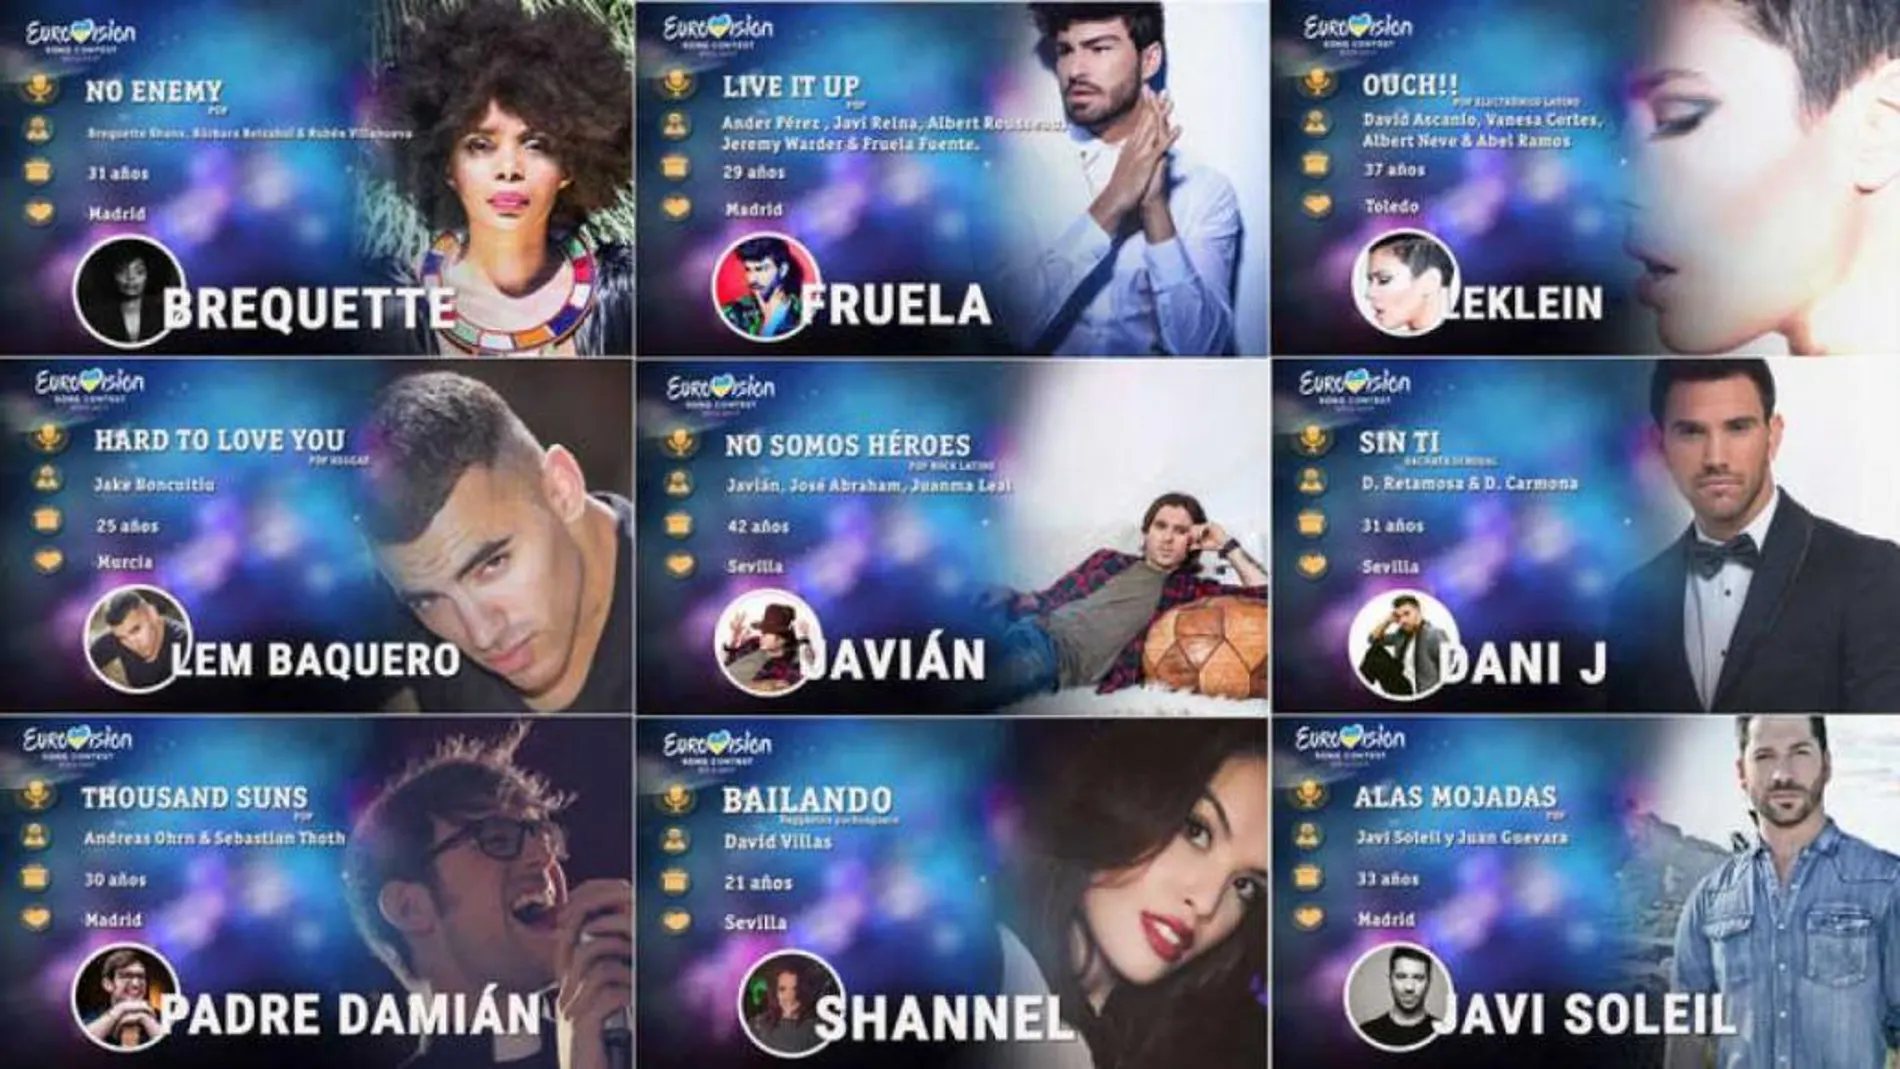 Javián de «OT», "Detergente líquido"y un cura misionero entre los 30 preseleccionados para Eurovisión